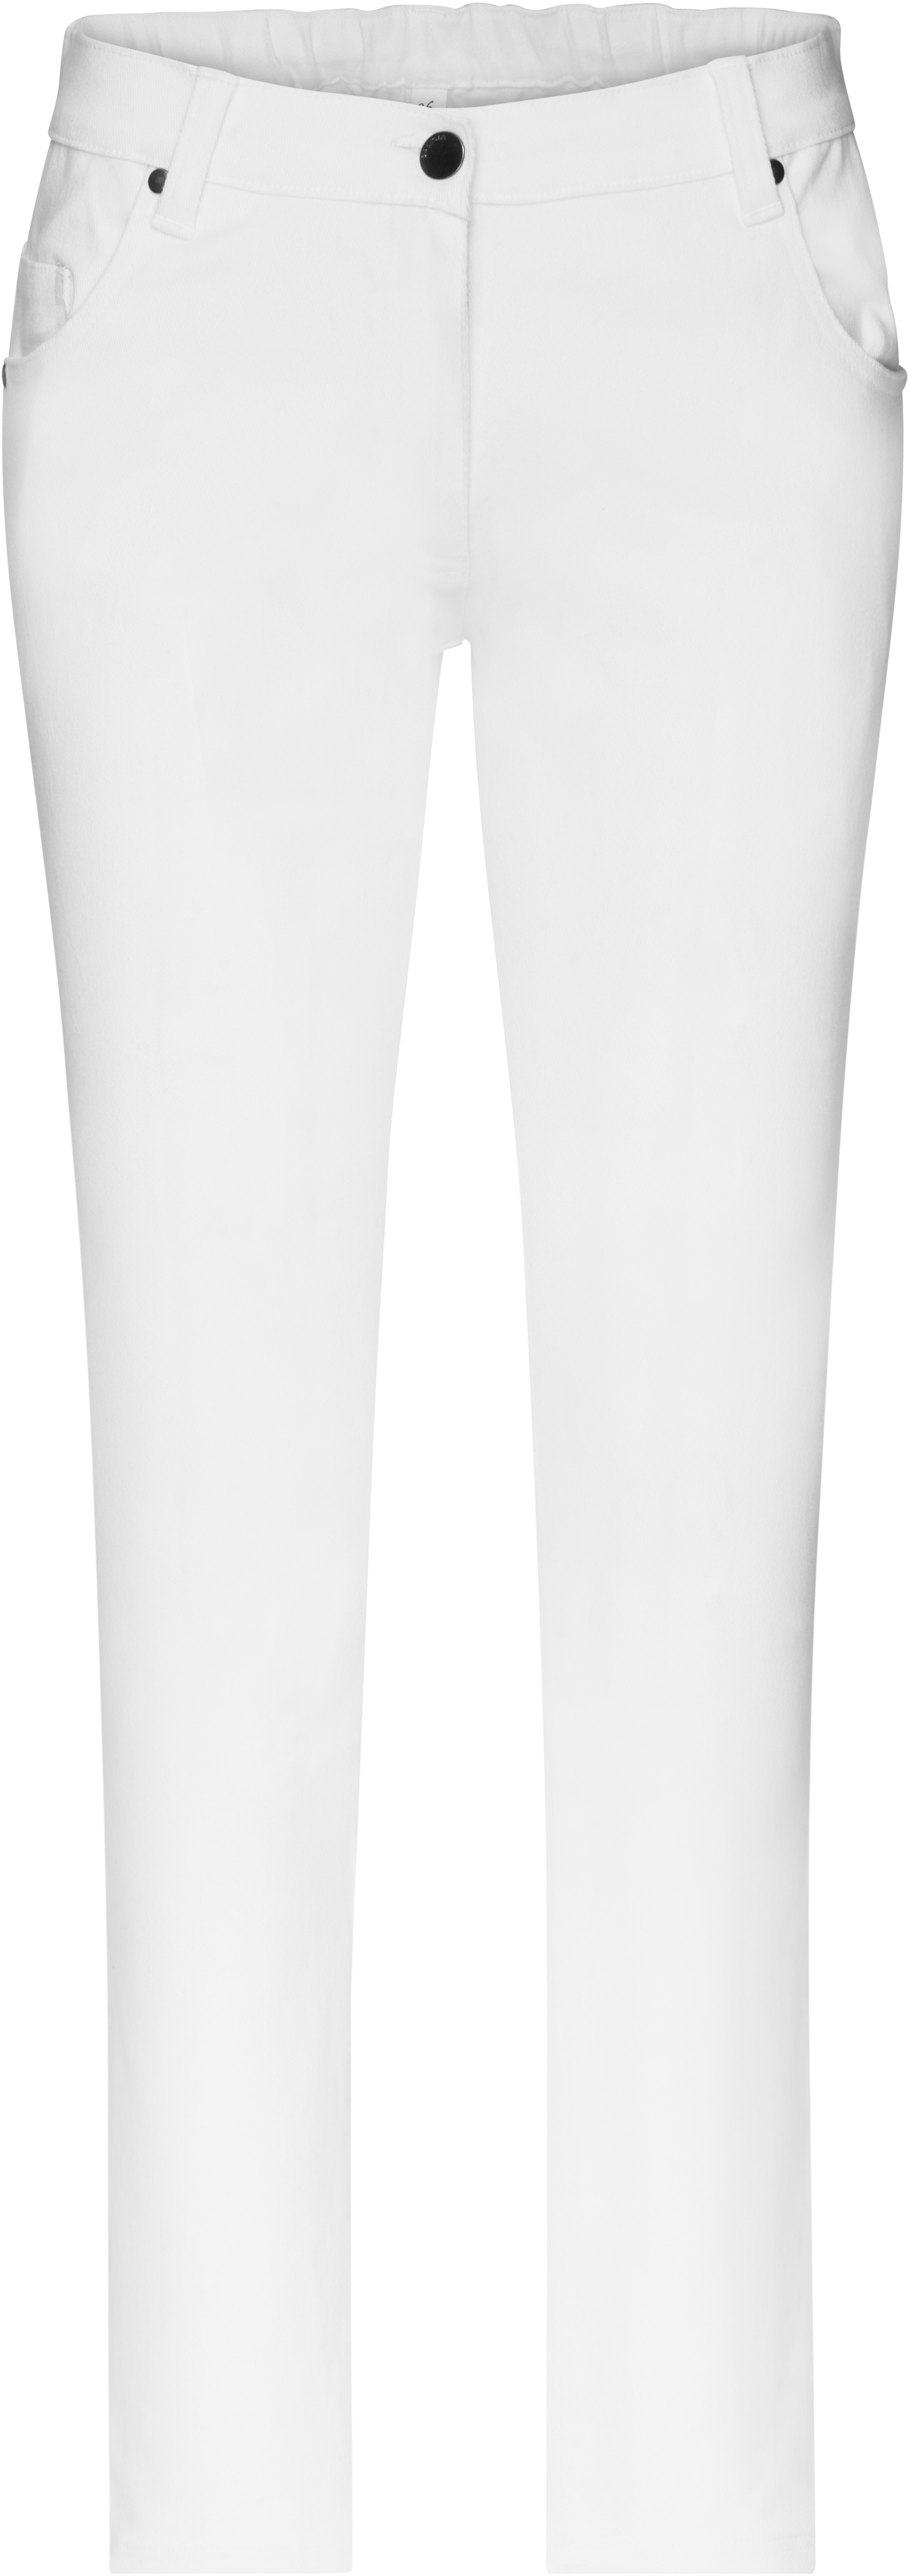 Dámské elastické kalhoty JN 3001 Barva: bílá, Velikost: 44